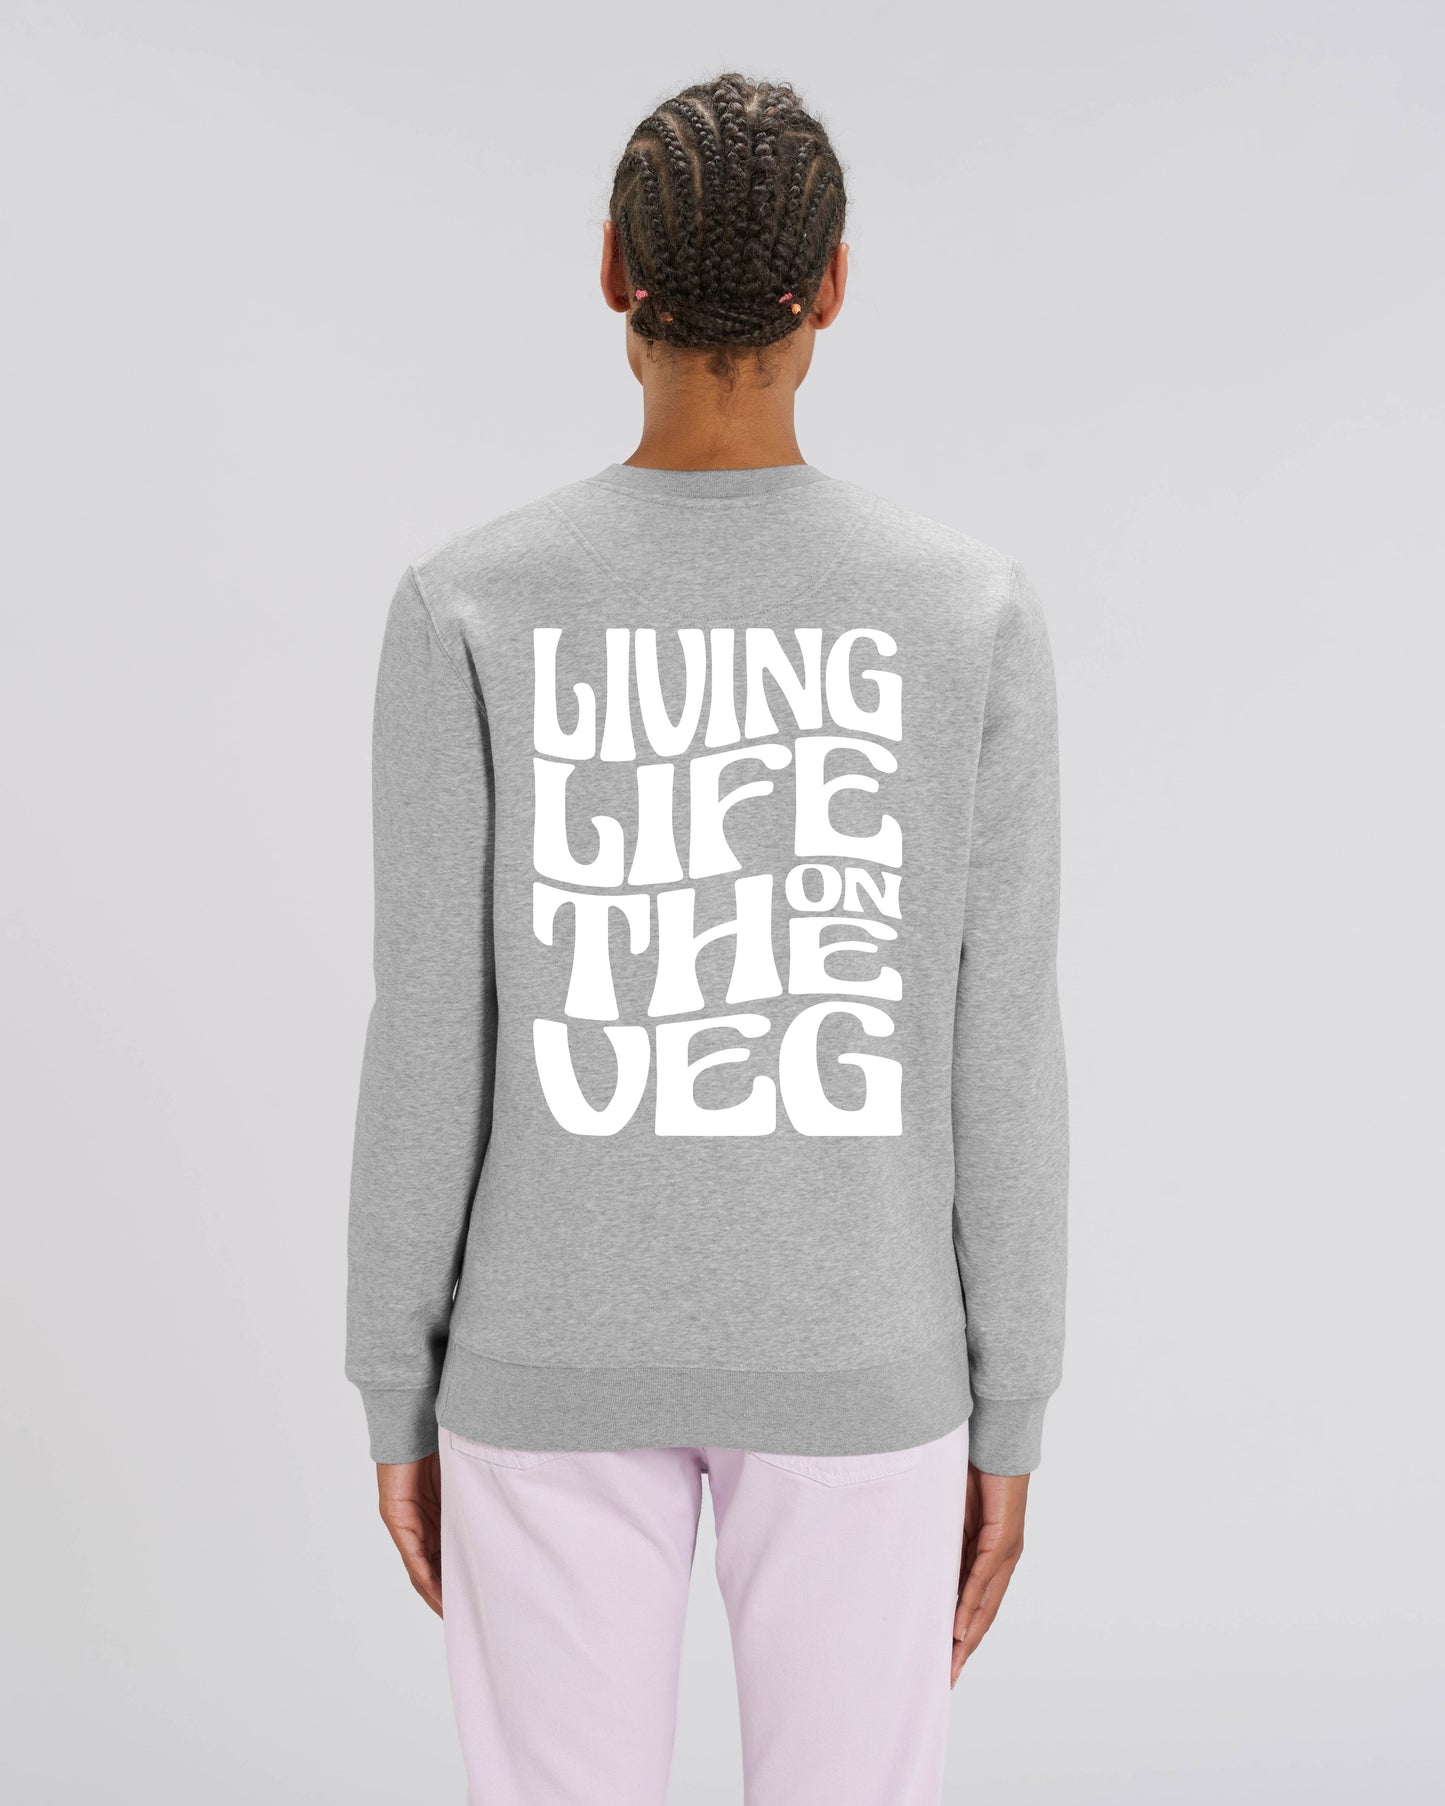 On The Veg Sweater Women/Unisex